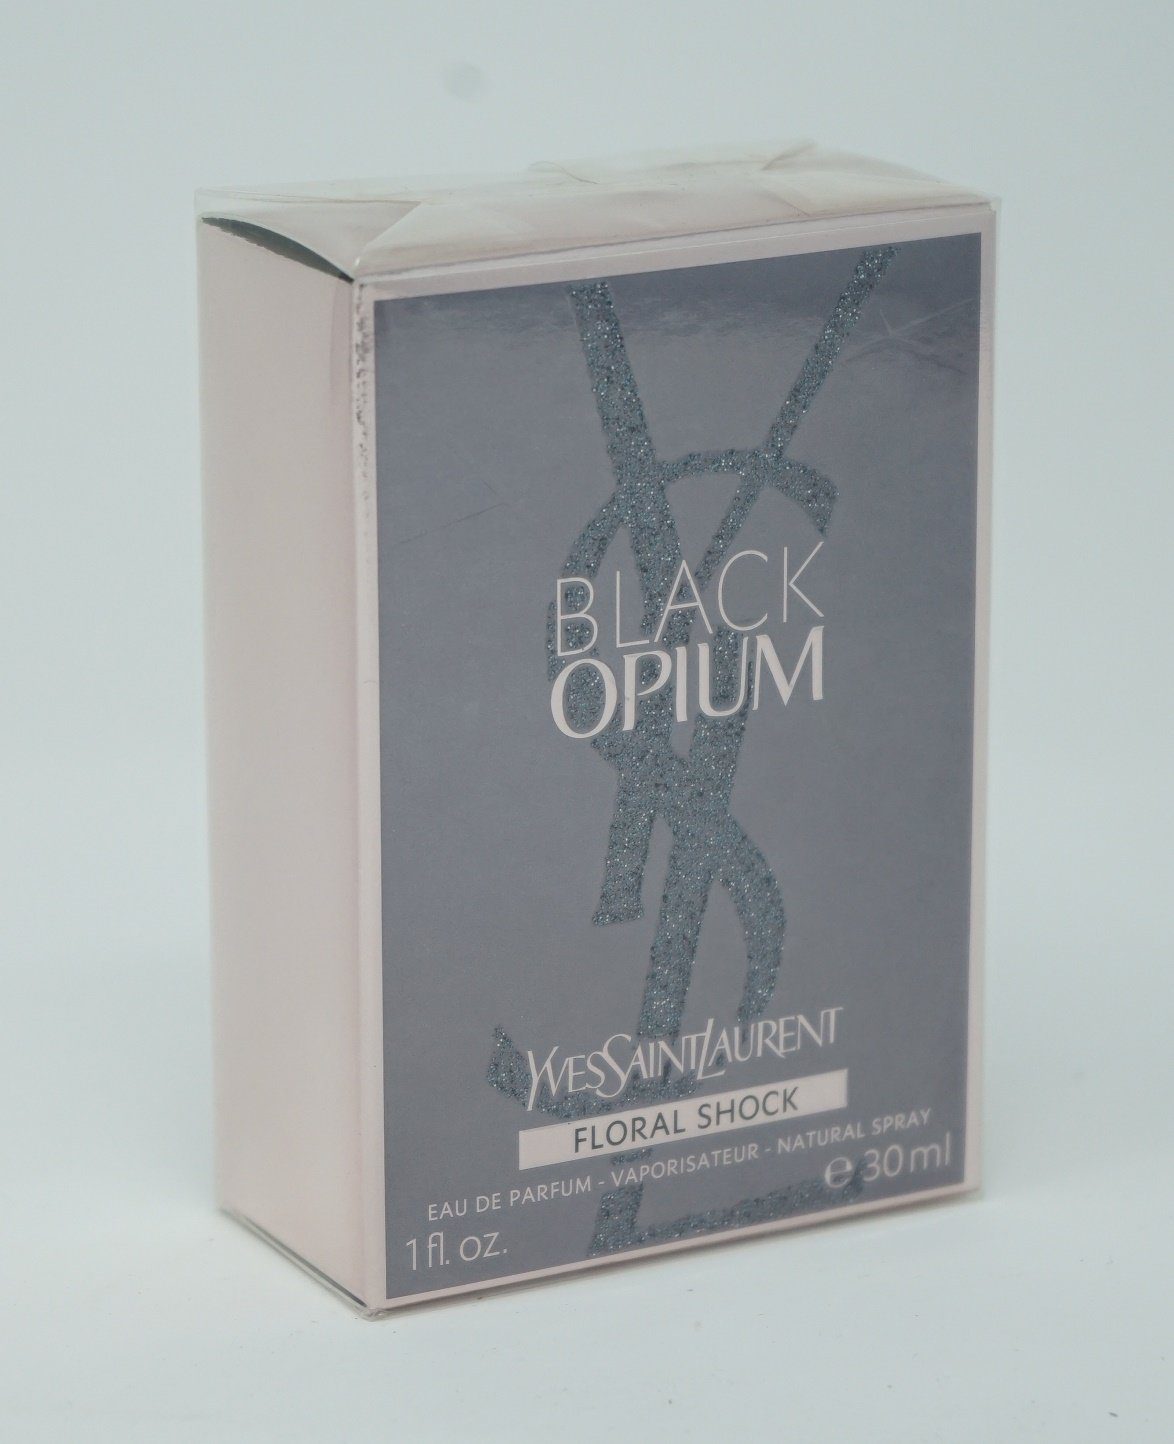 YVES SAINT LAURENT Eau de Parfum Yves Saint Laurent Black Opium Floral Shock Eau de Parfum 30ml